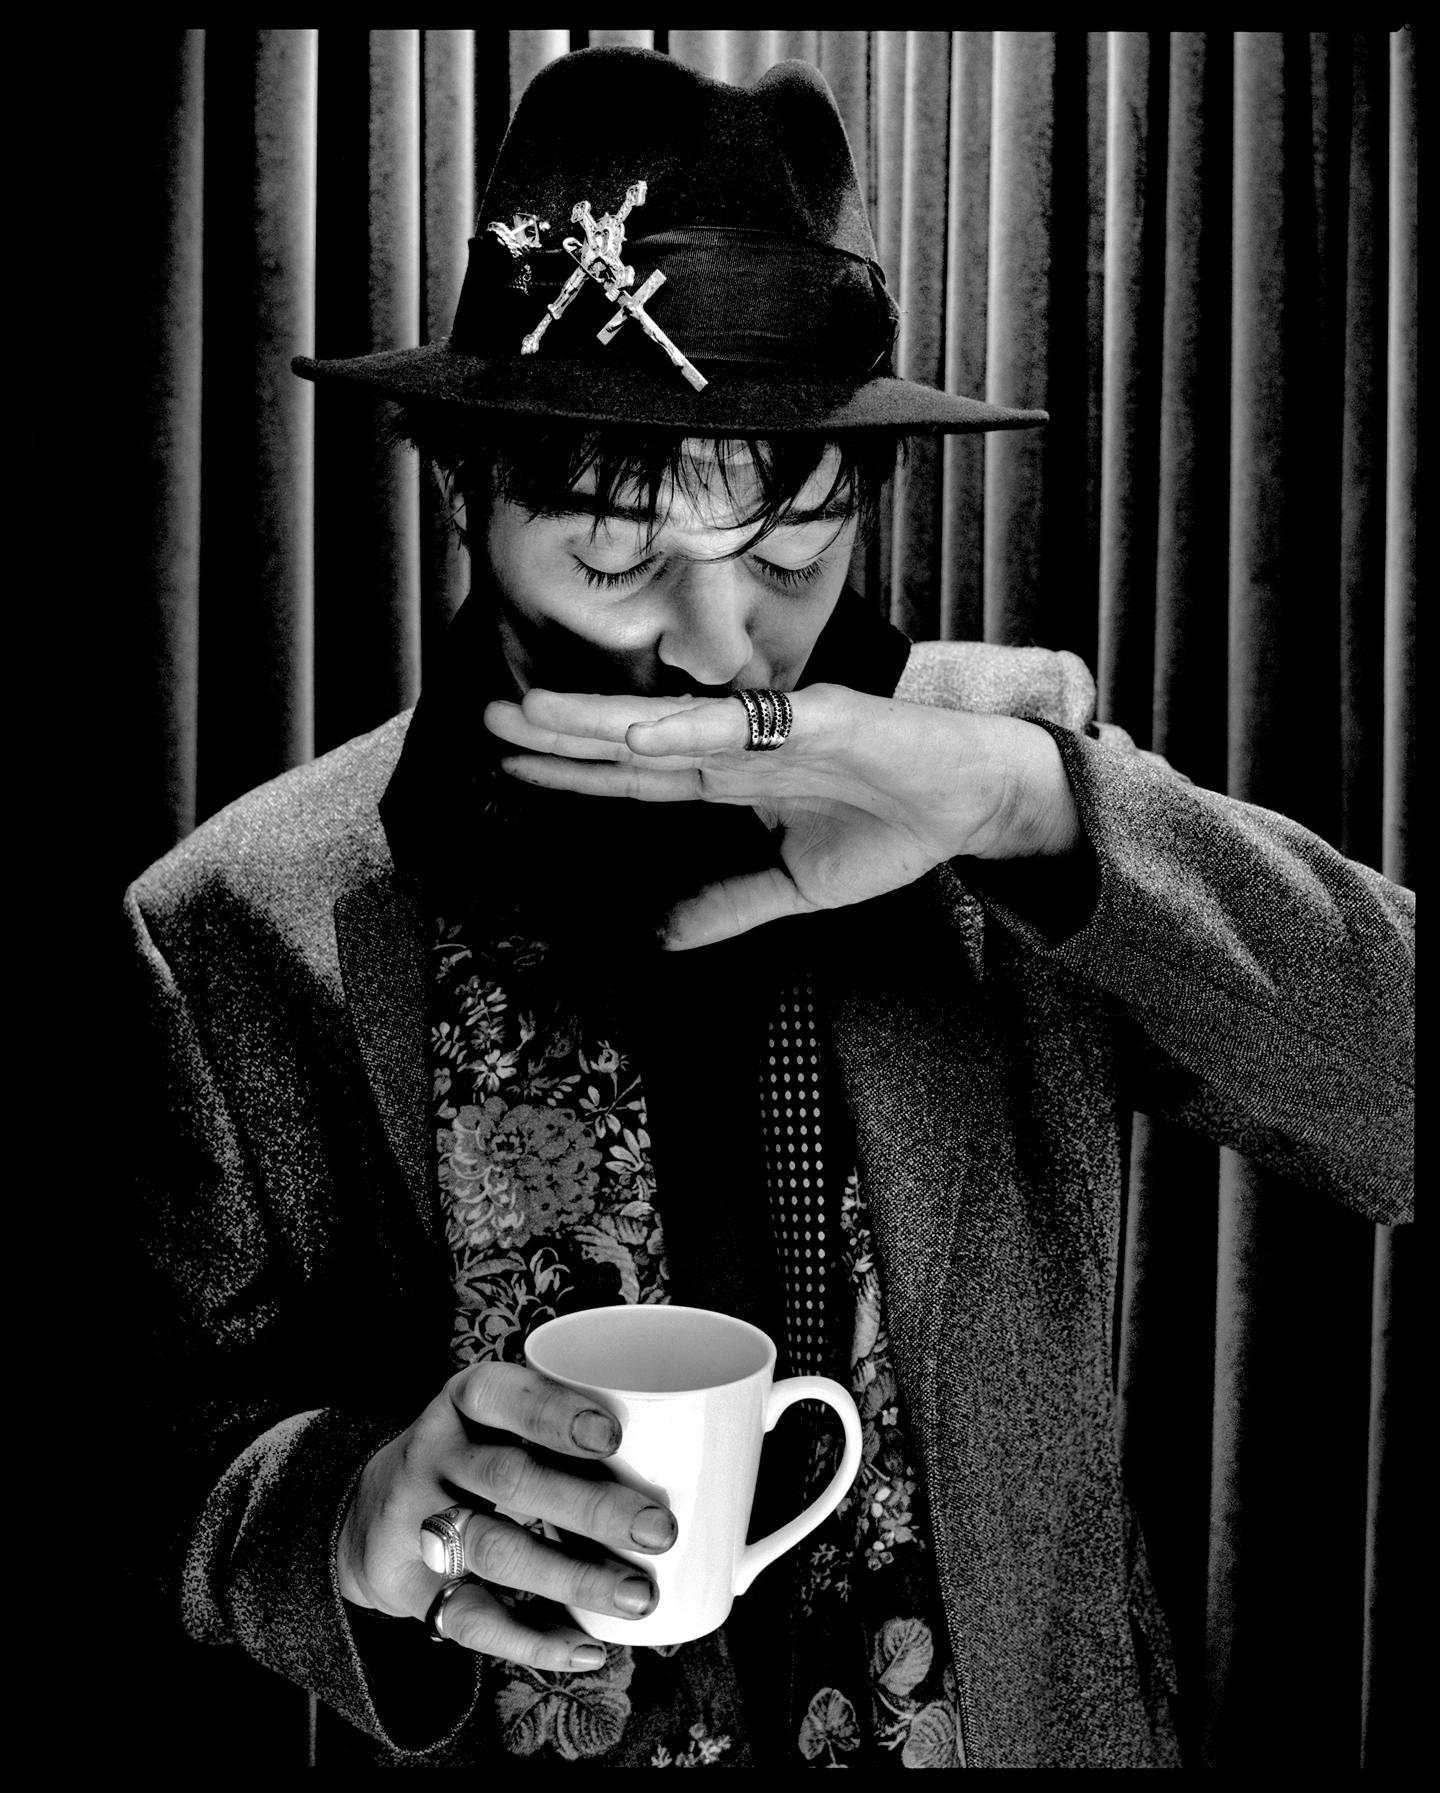 Pete Doherty 

2009

par Kevin Westenberg
Édition limitée signée

Kevin Westenberg est Famed pour sa création d'images provocantes et électrisantes de musiciens, d'artistes et de stars de cinéma de classe mondiale depuis plus de 25 ans.

Sa